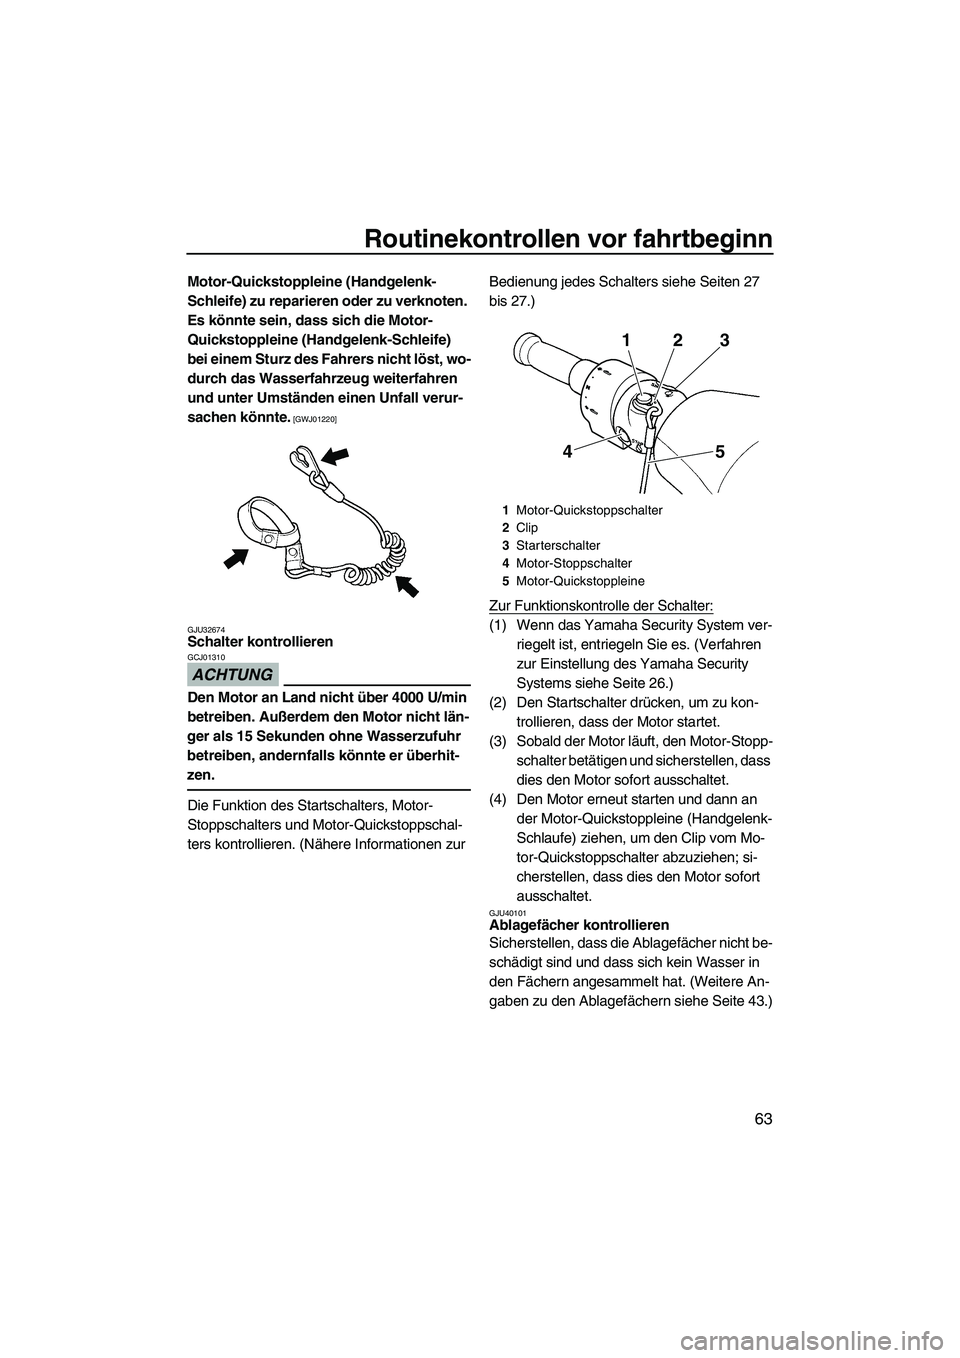 YAMAHA FZR SVHO 2010  Betriebsanleitungen (in German) Routinekontrollen vor fahrtbeginn
63
Motor-Quickstoppleine (Handgelenk-
Schleife) zu reparieren oder zu verknoten. 
Es könnte sein, dass sich die Motor-
Quickstoppleine (Handgelenk-Schleife) 
bei ein